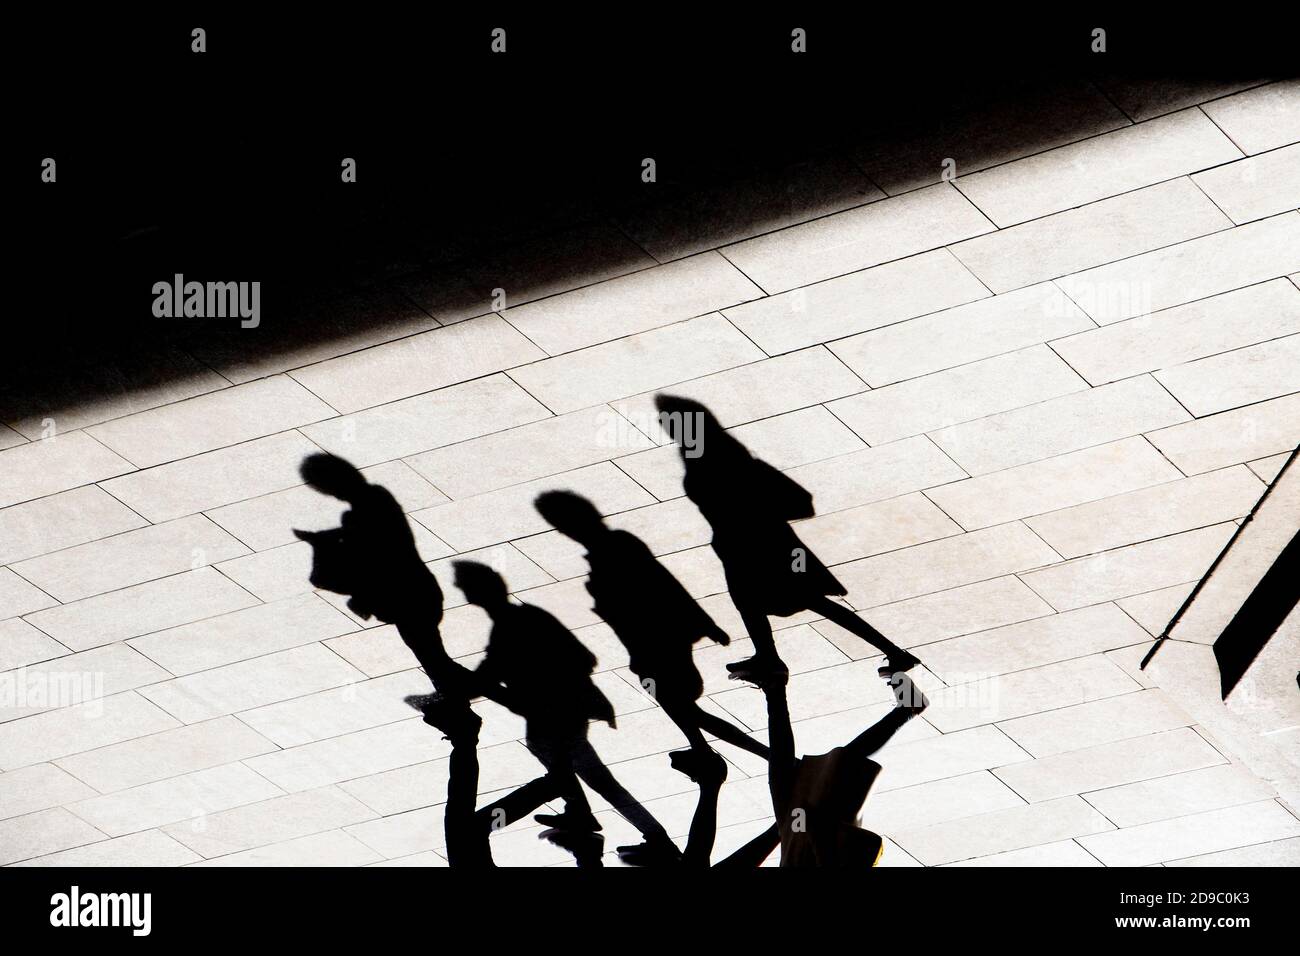 Profilo astratto dell'ombra di sfondo di quattro persone che camminano sul marciapiede della città, in bianco e nero ad alto contrasto Foto Stock